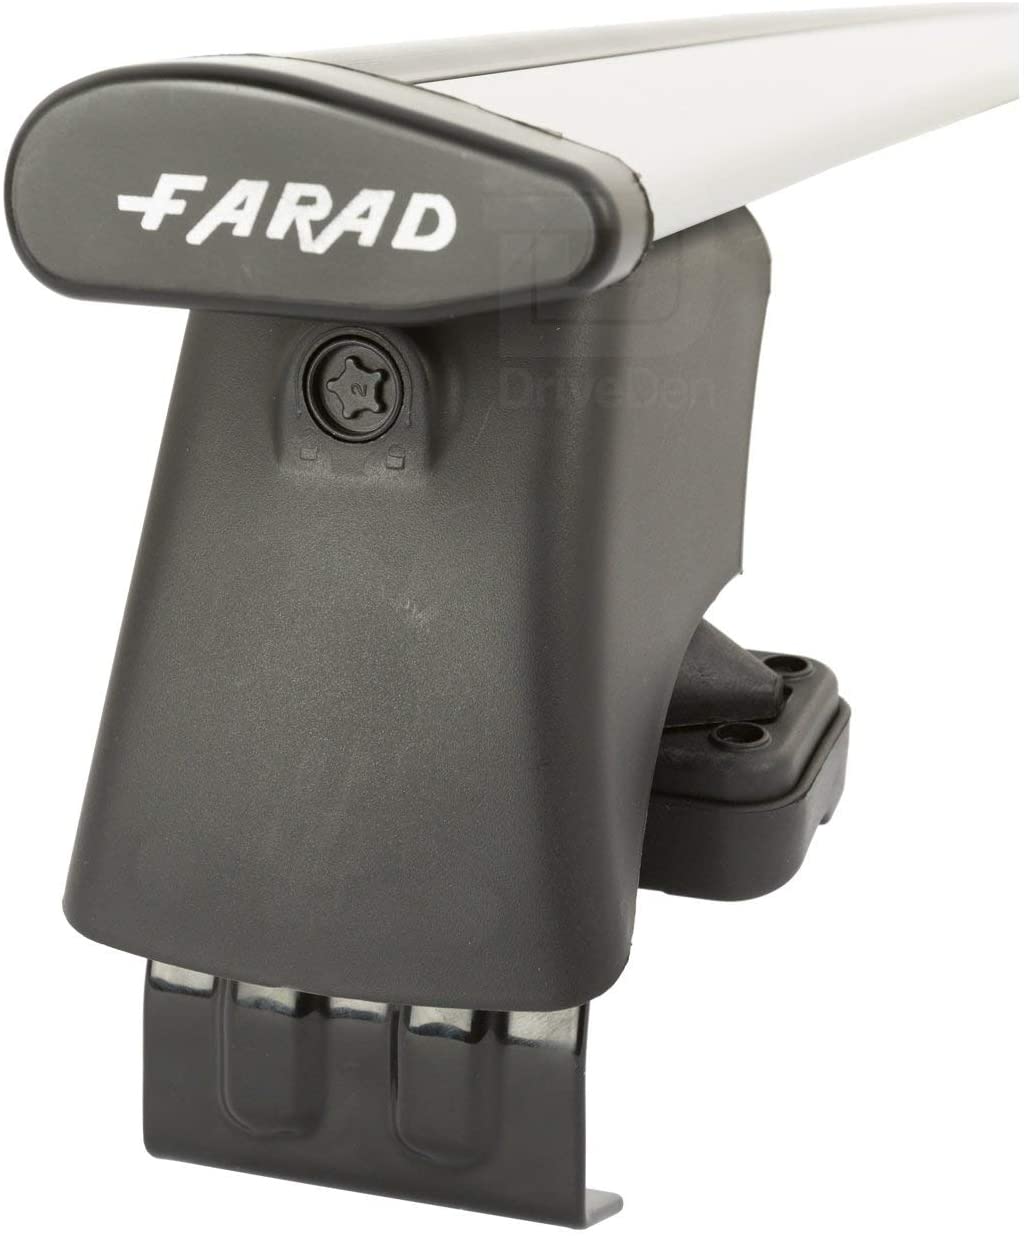 FARAD-Kit H2 per barre portatutto - Nissan Juke 2010-2019 (senza corrimano)